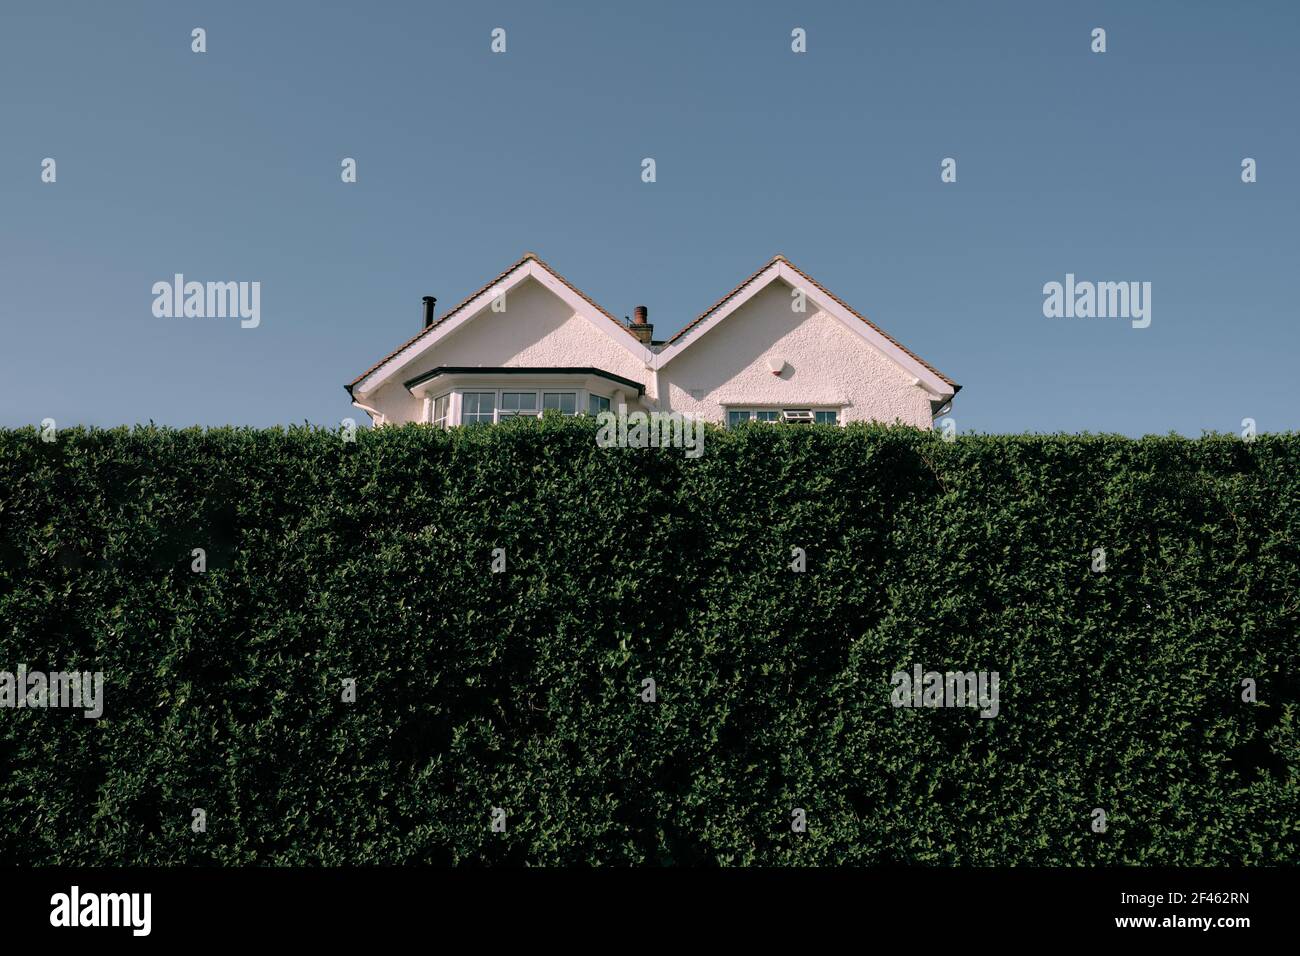 M a forma di / Double Pitched / doppio tetto timpano architettura della casa suburbana mezzo nascosto proprietà dietro un alto giardino verde siepe & cielo blu. Foto Stock